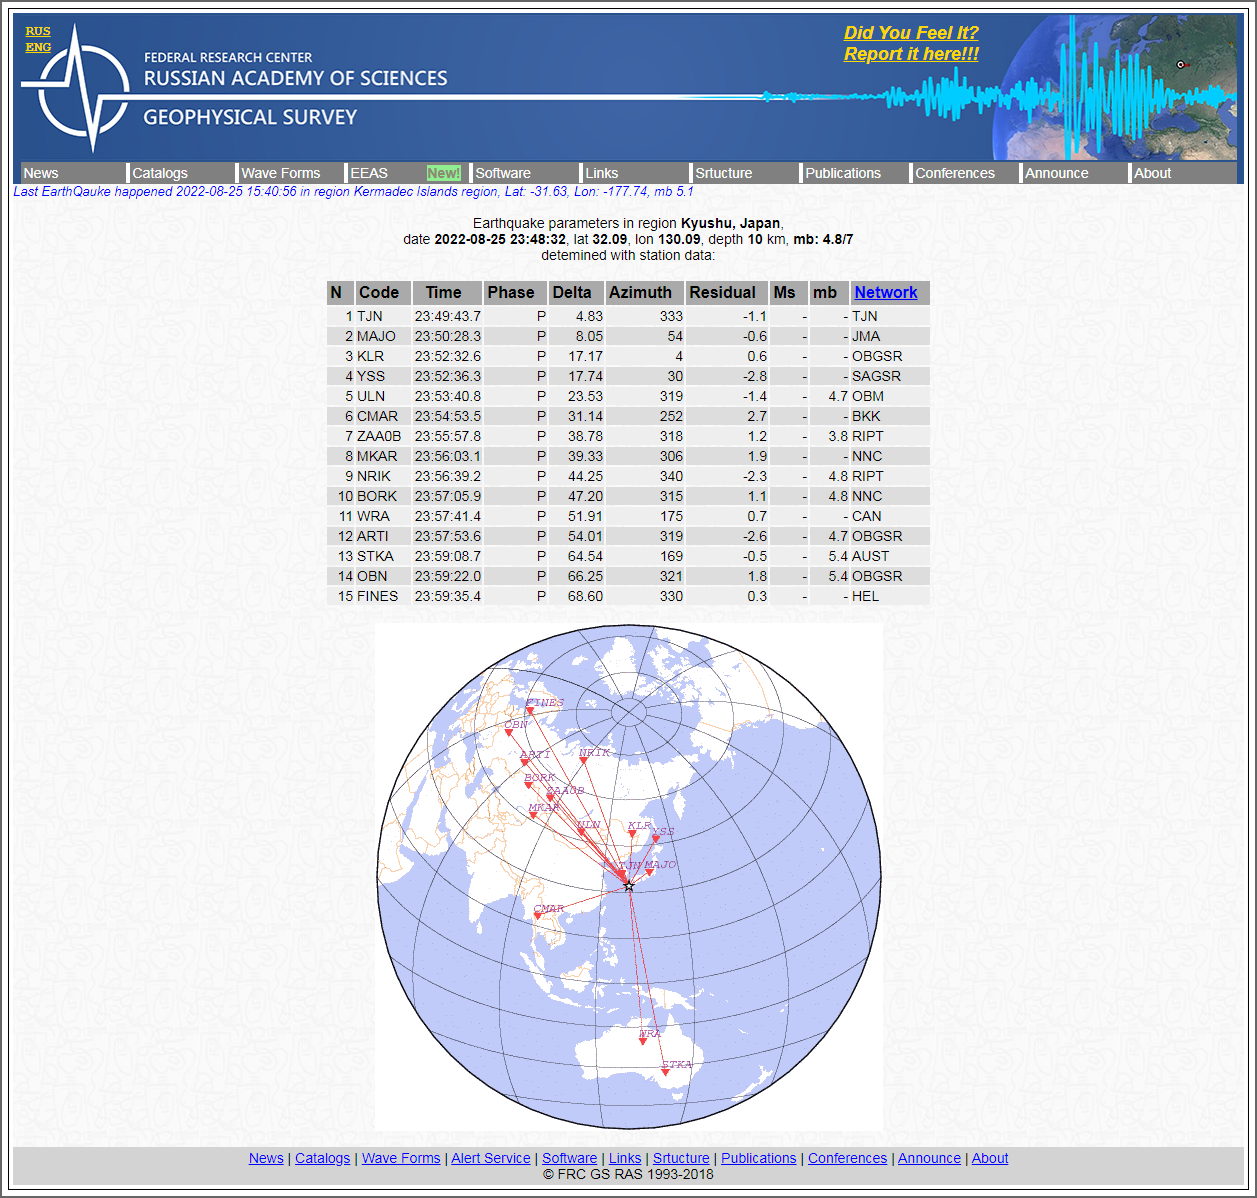 Alert Survey - Earthquake parameters in region Kyu.png